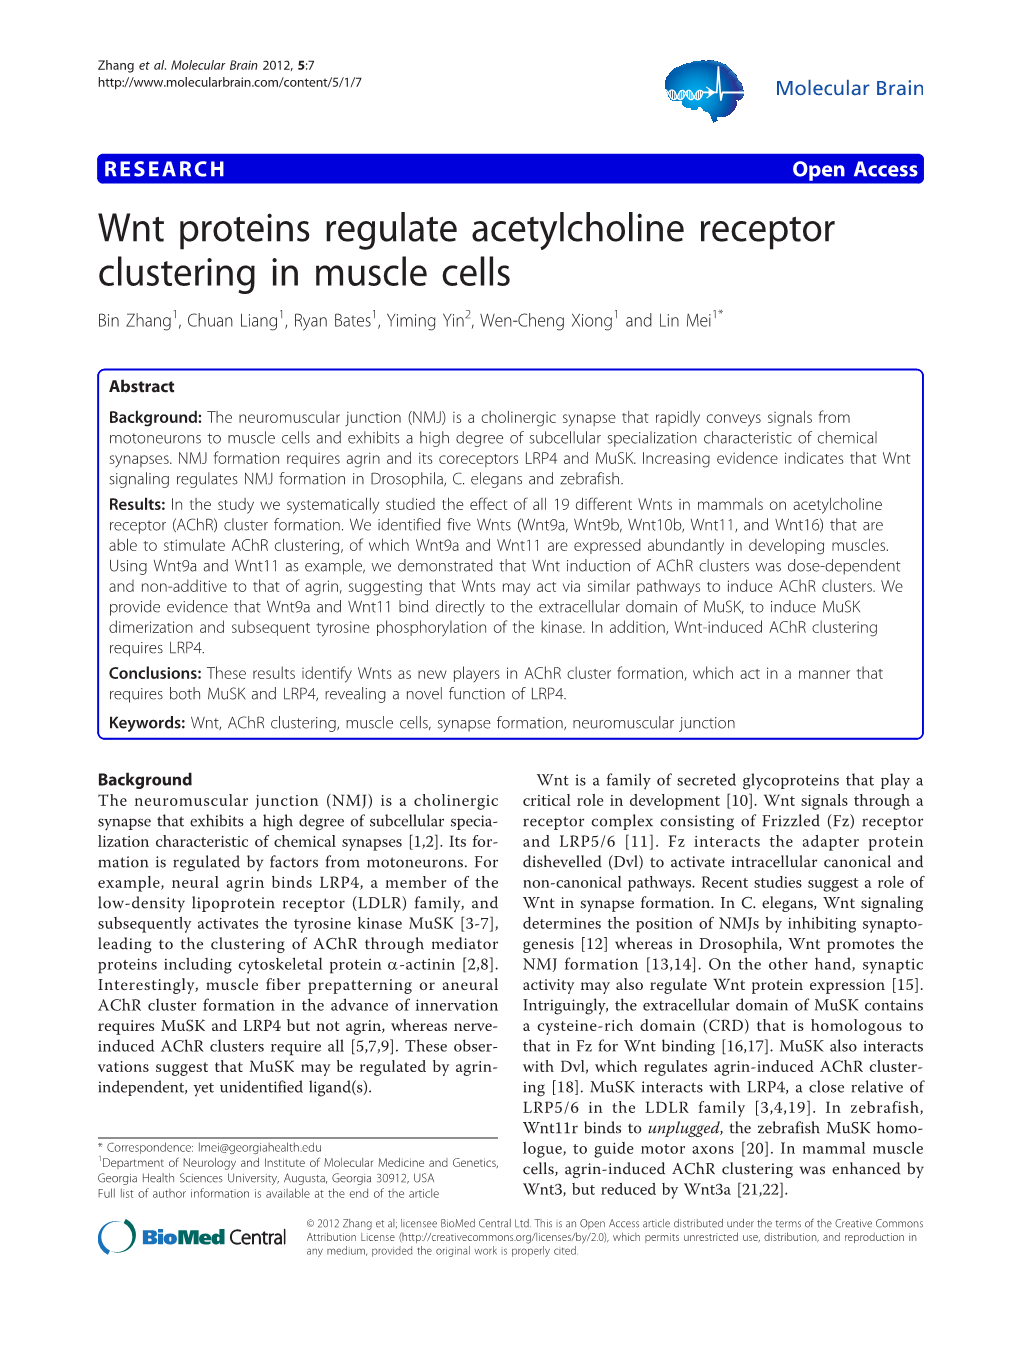 Wnt Proteins Regulate Acetylcholine Receptor Clustering in Muscle Cells Bin Zhang1, Chuan Liang1, Ryan Bates1, Yiming Yin2, Wen-Cheng Xiong1 and Lin Mei1*